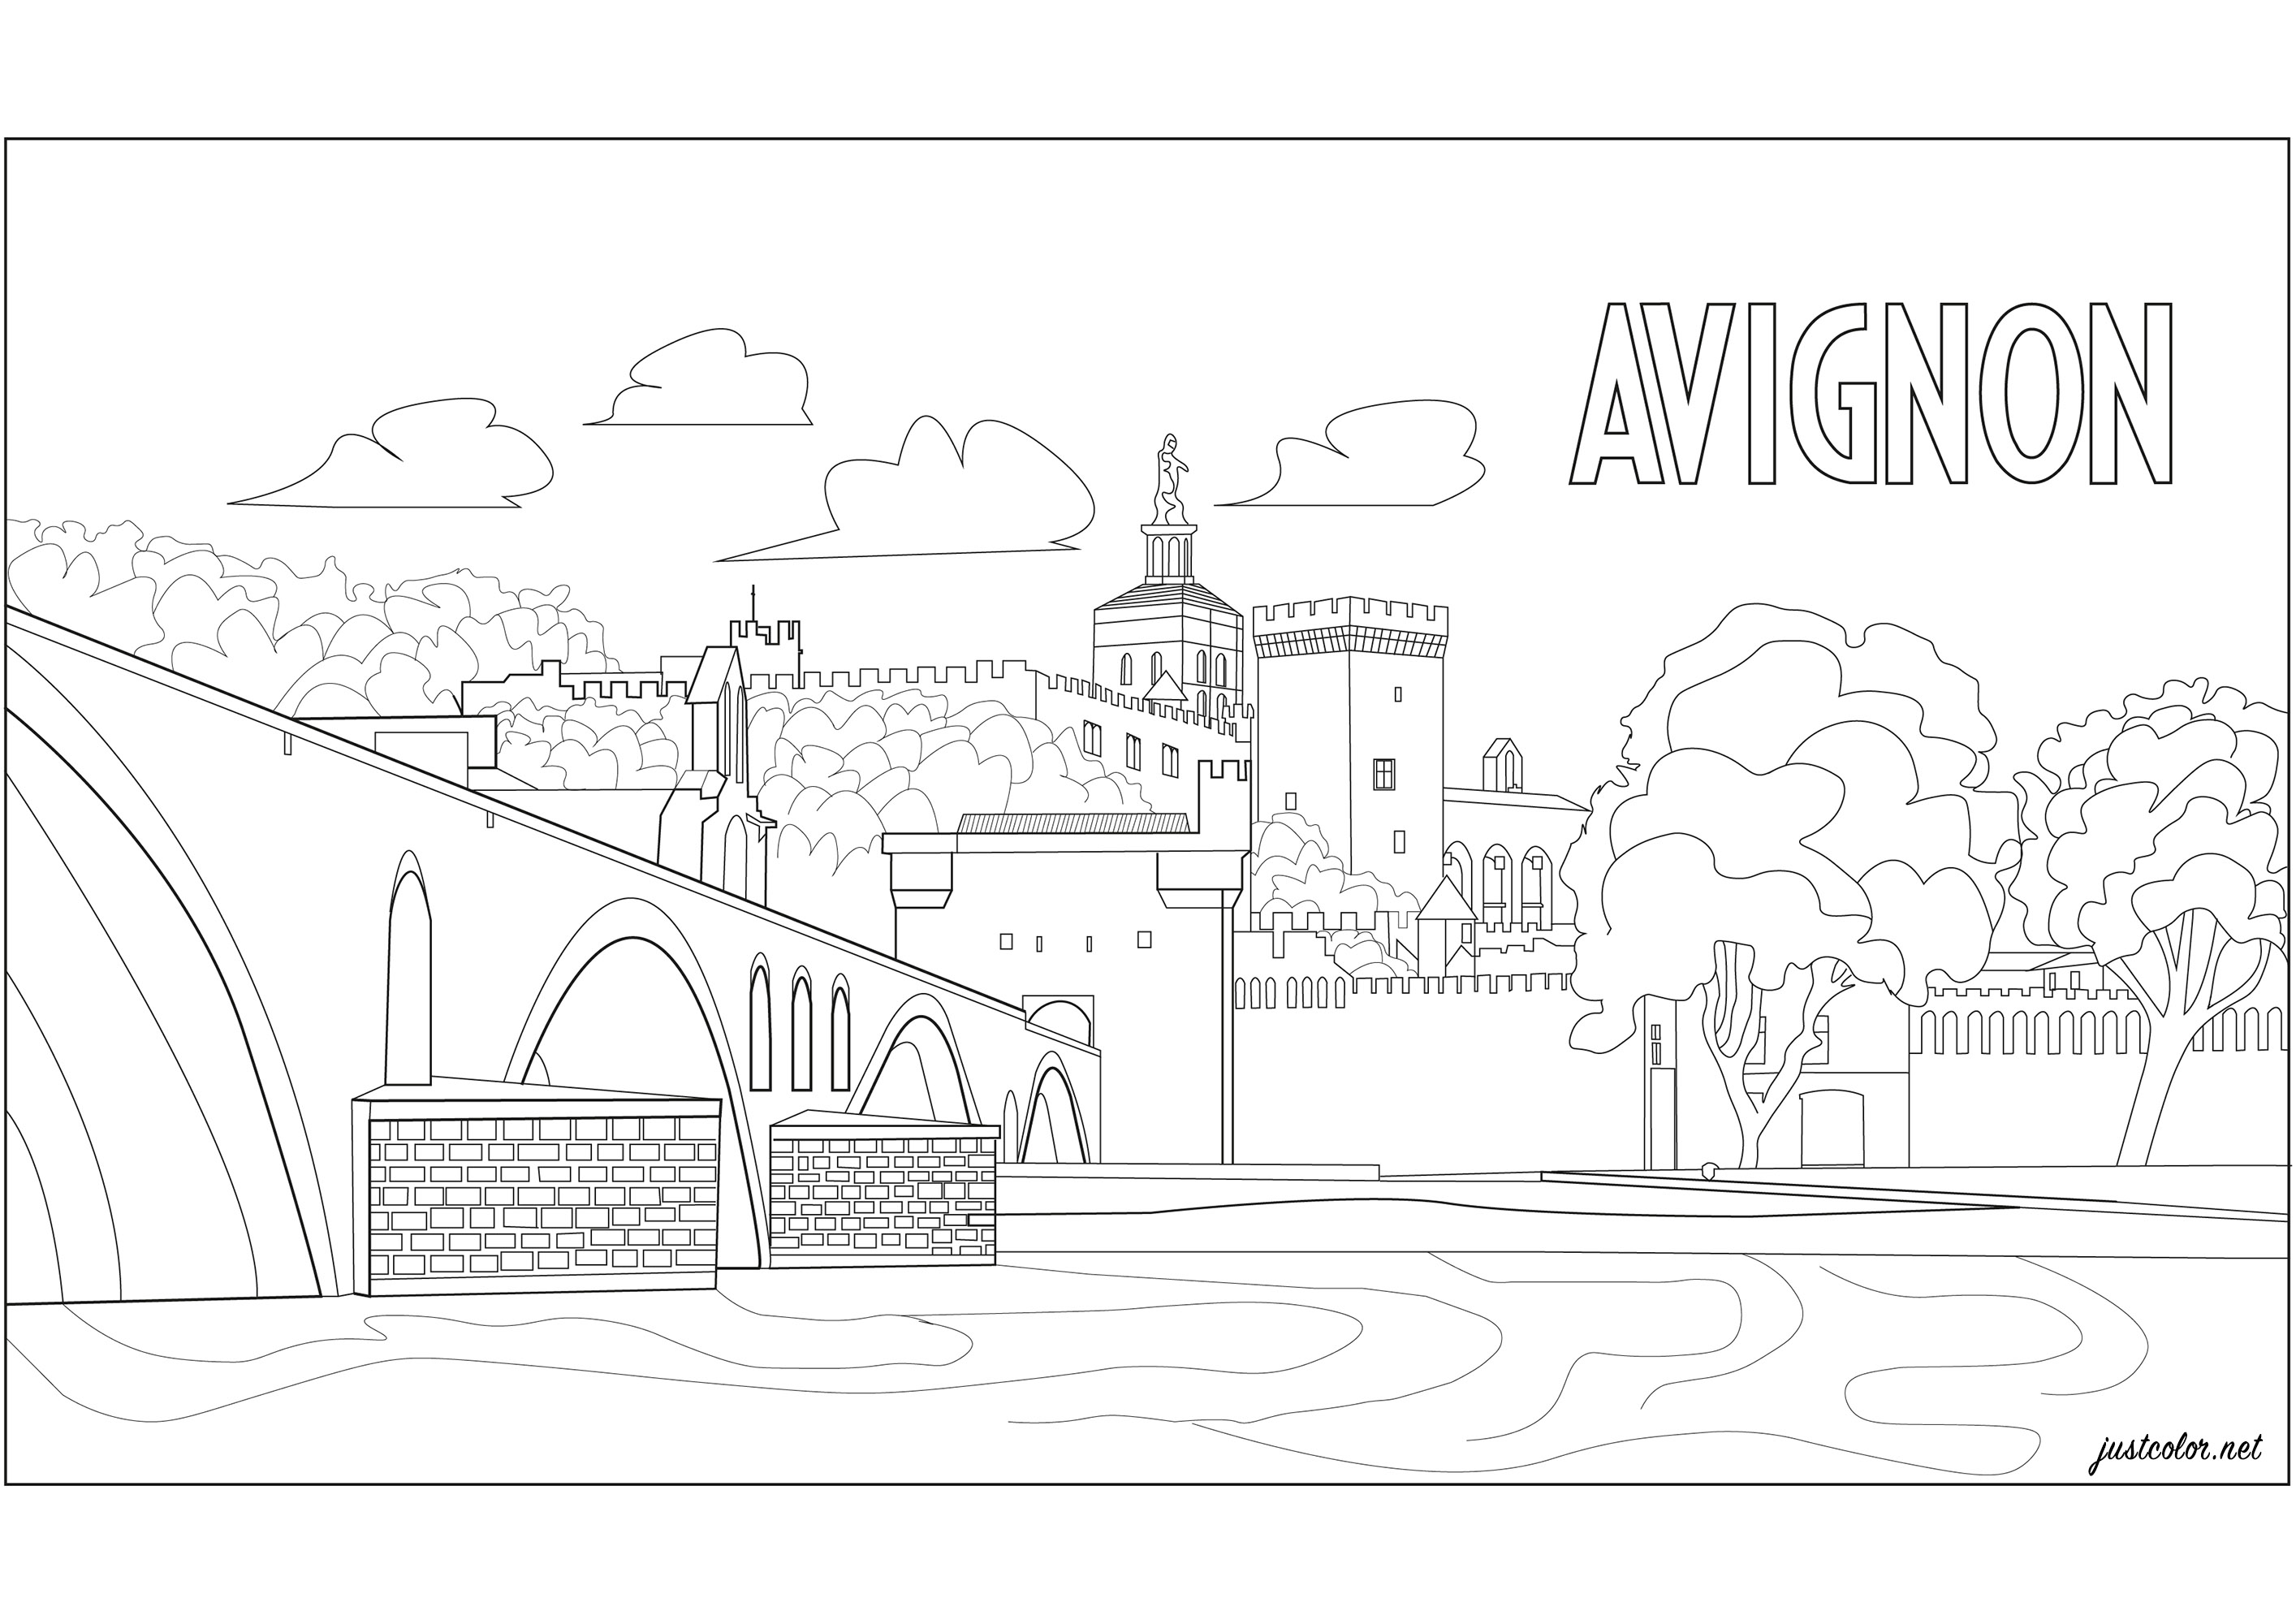 Avignon (Frankreich) : Der Palast der Päpste und die 'Pont d'Avignon'. Sie befinden sich im Süden Frankreichs am Rande der Rhône.
